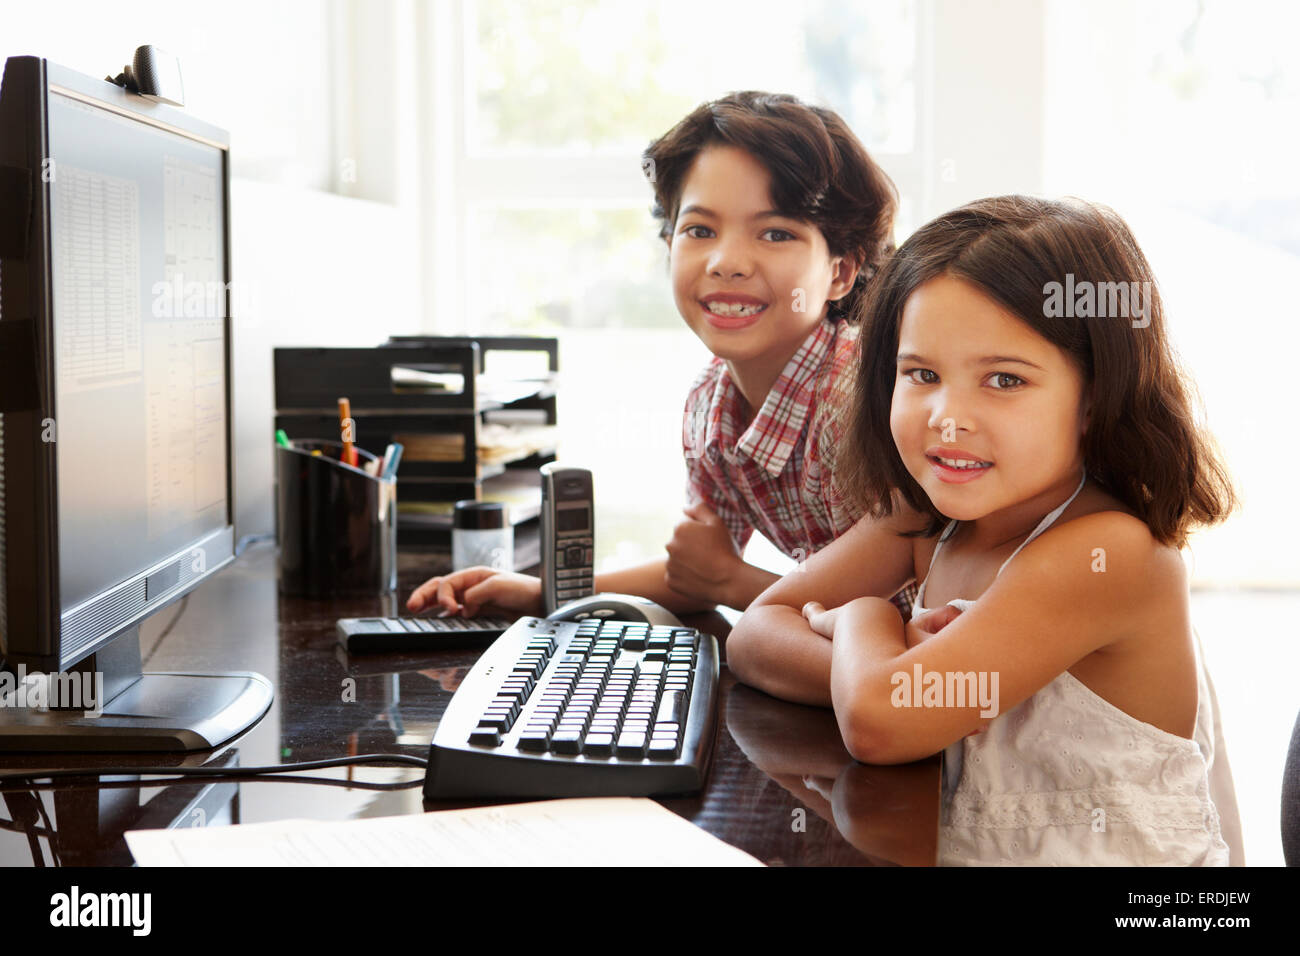 Hispanic children using computer at home Stock Photo